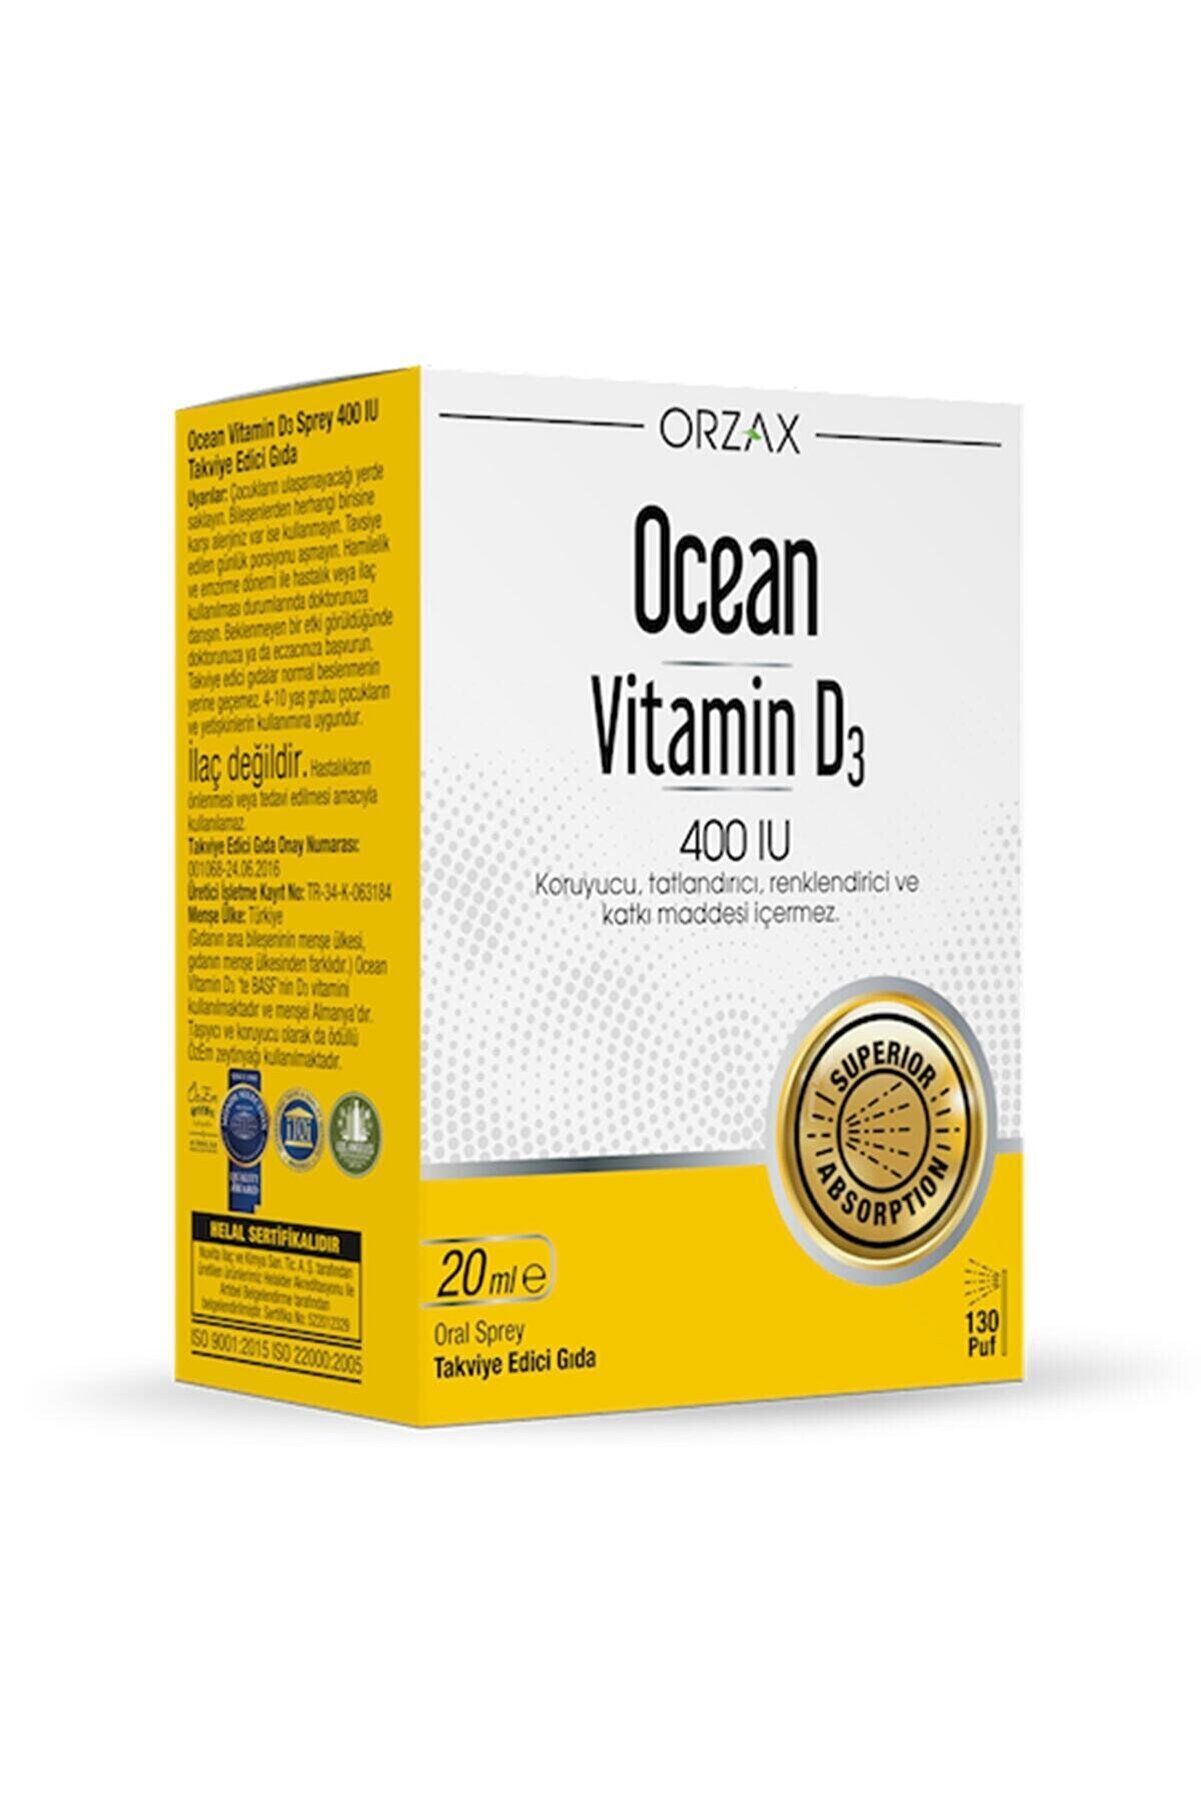 Ocean Vitamin D3 400 IU